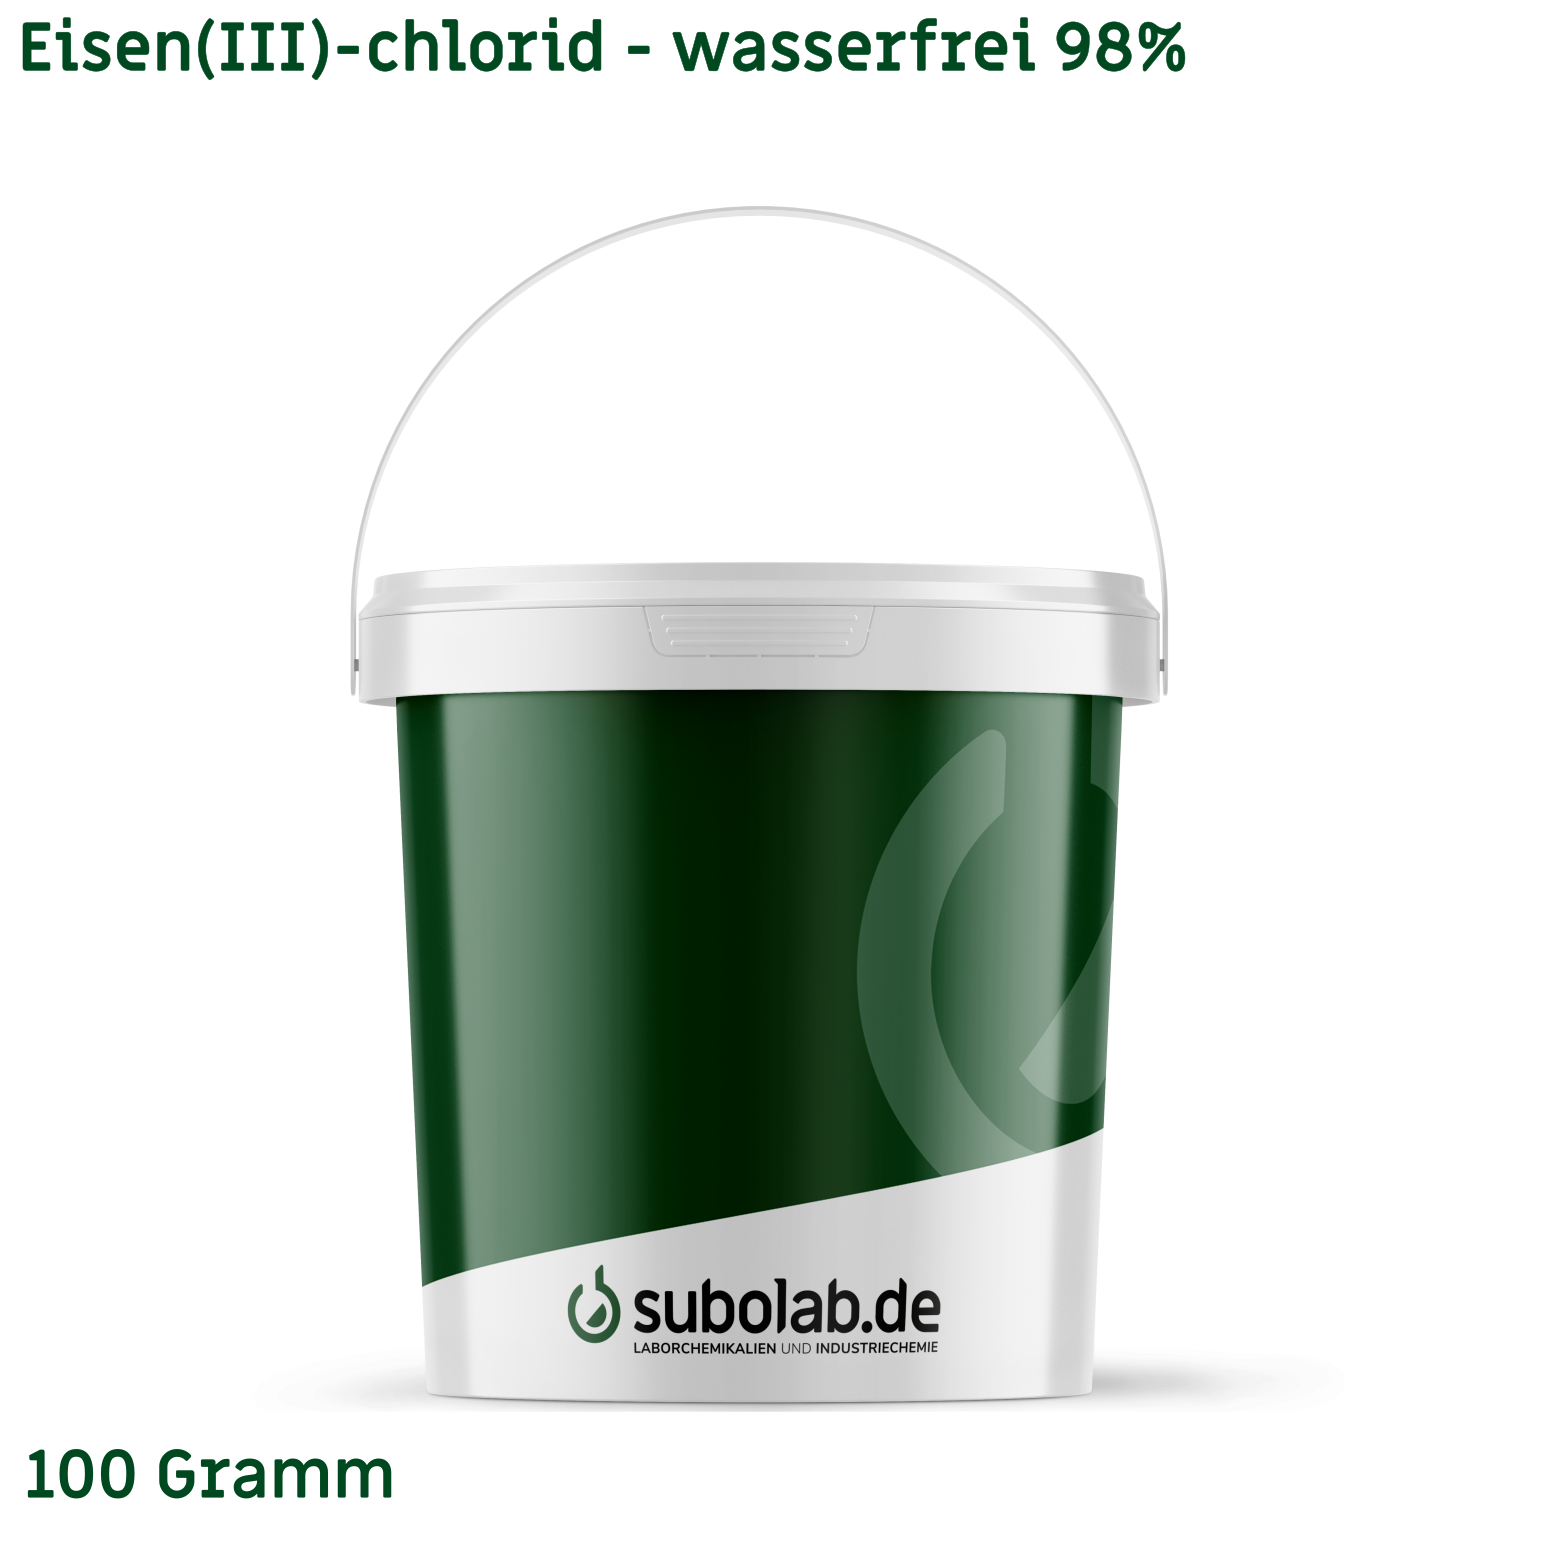 Bild von Eisen(III)-chlorid - wasserfrei 98% (100 Gramm)